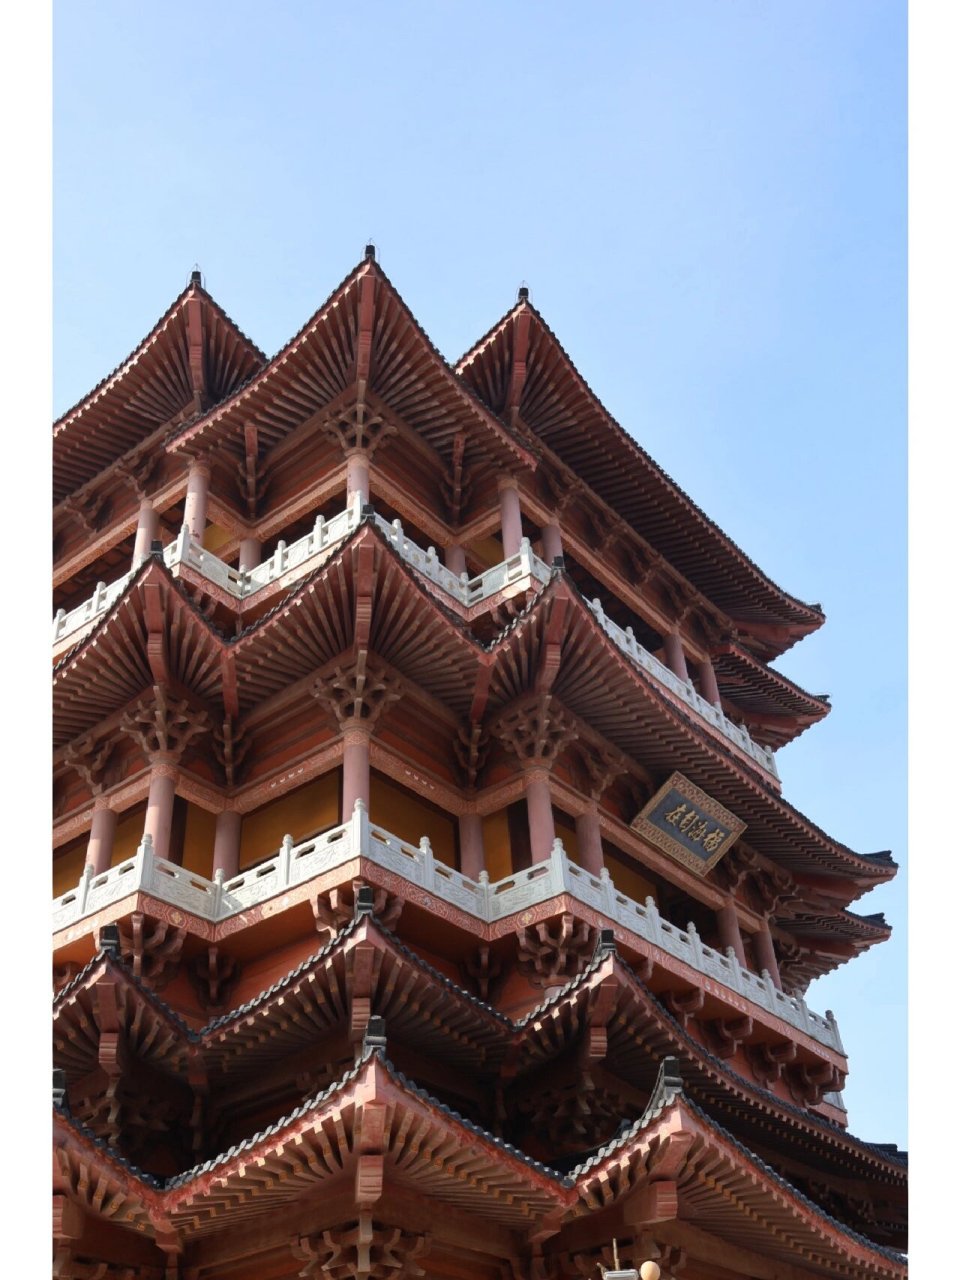 山东烟台寺庙图片